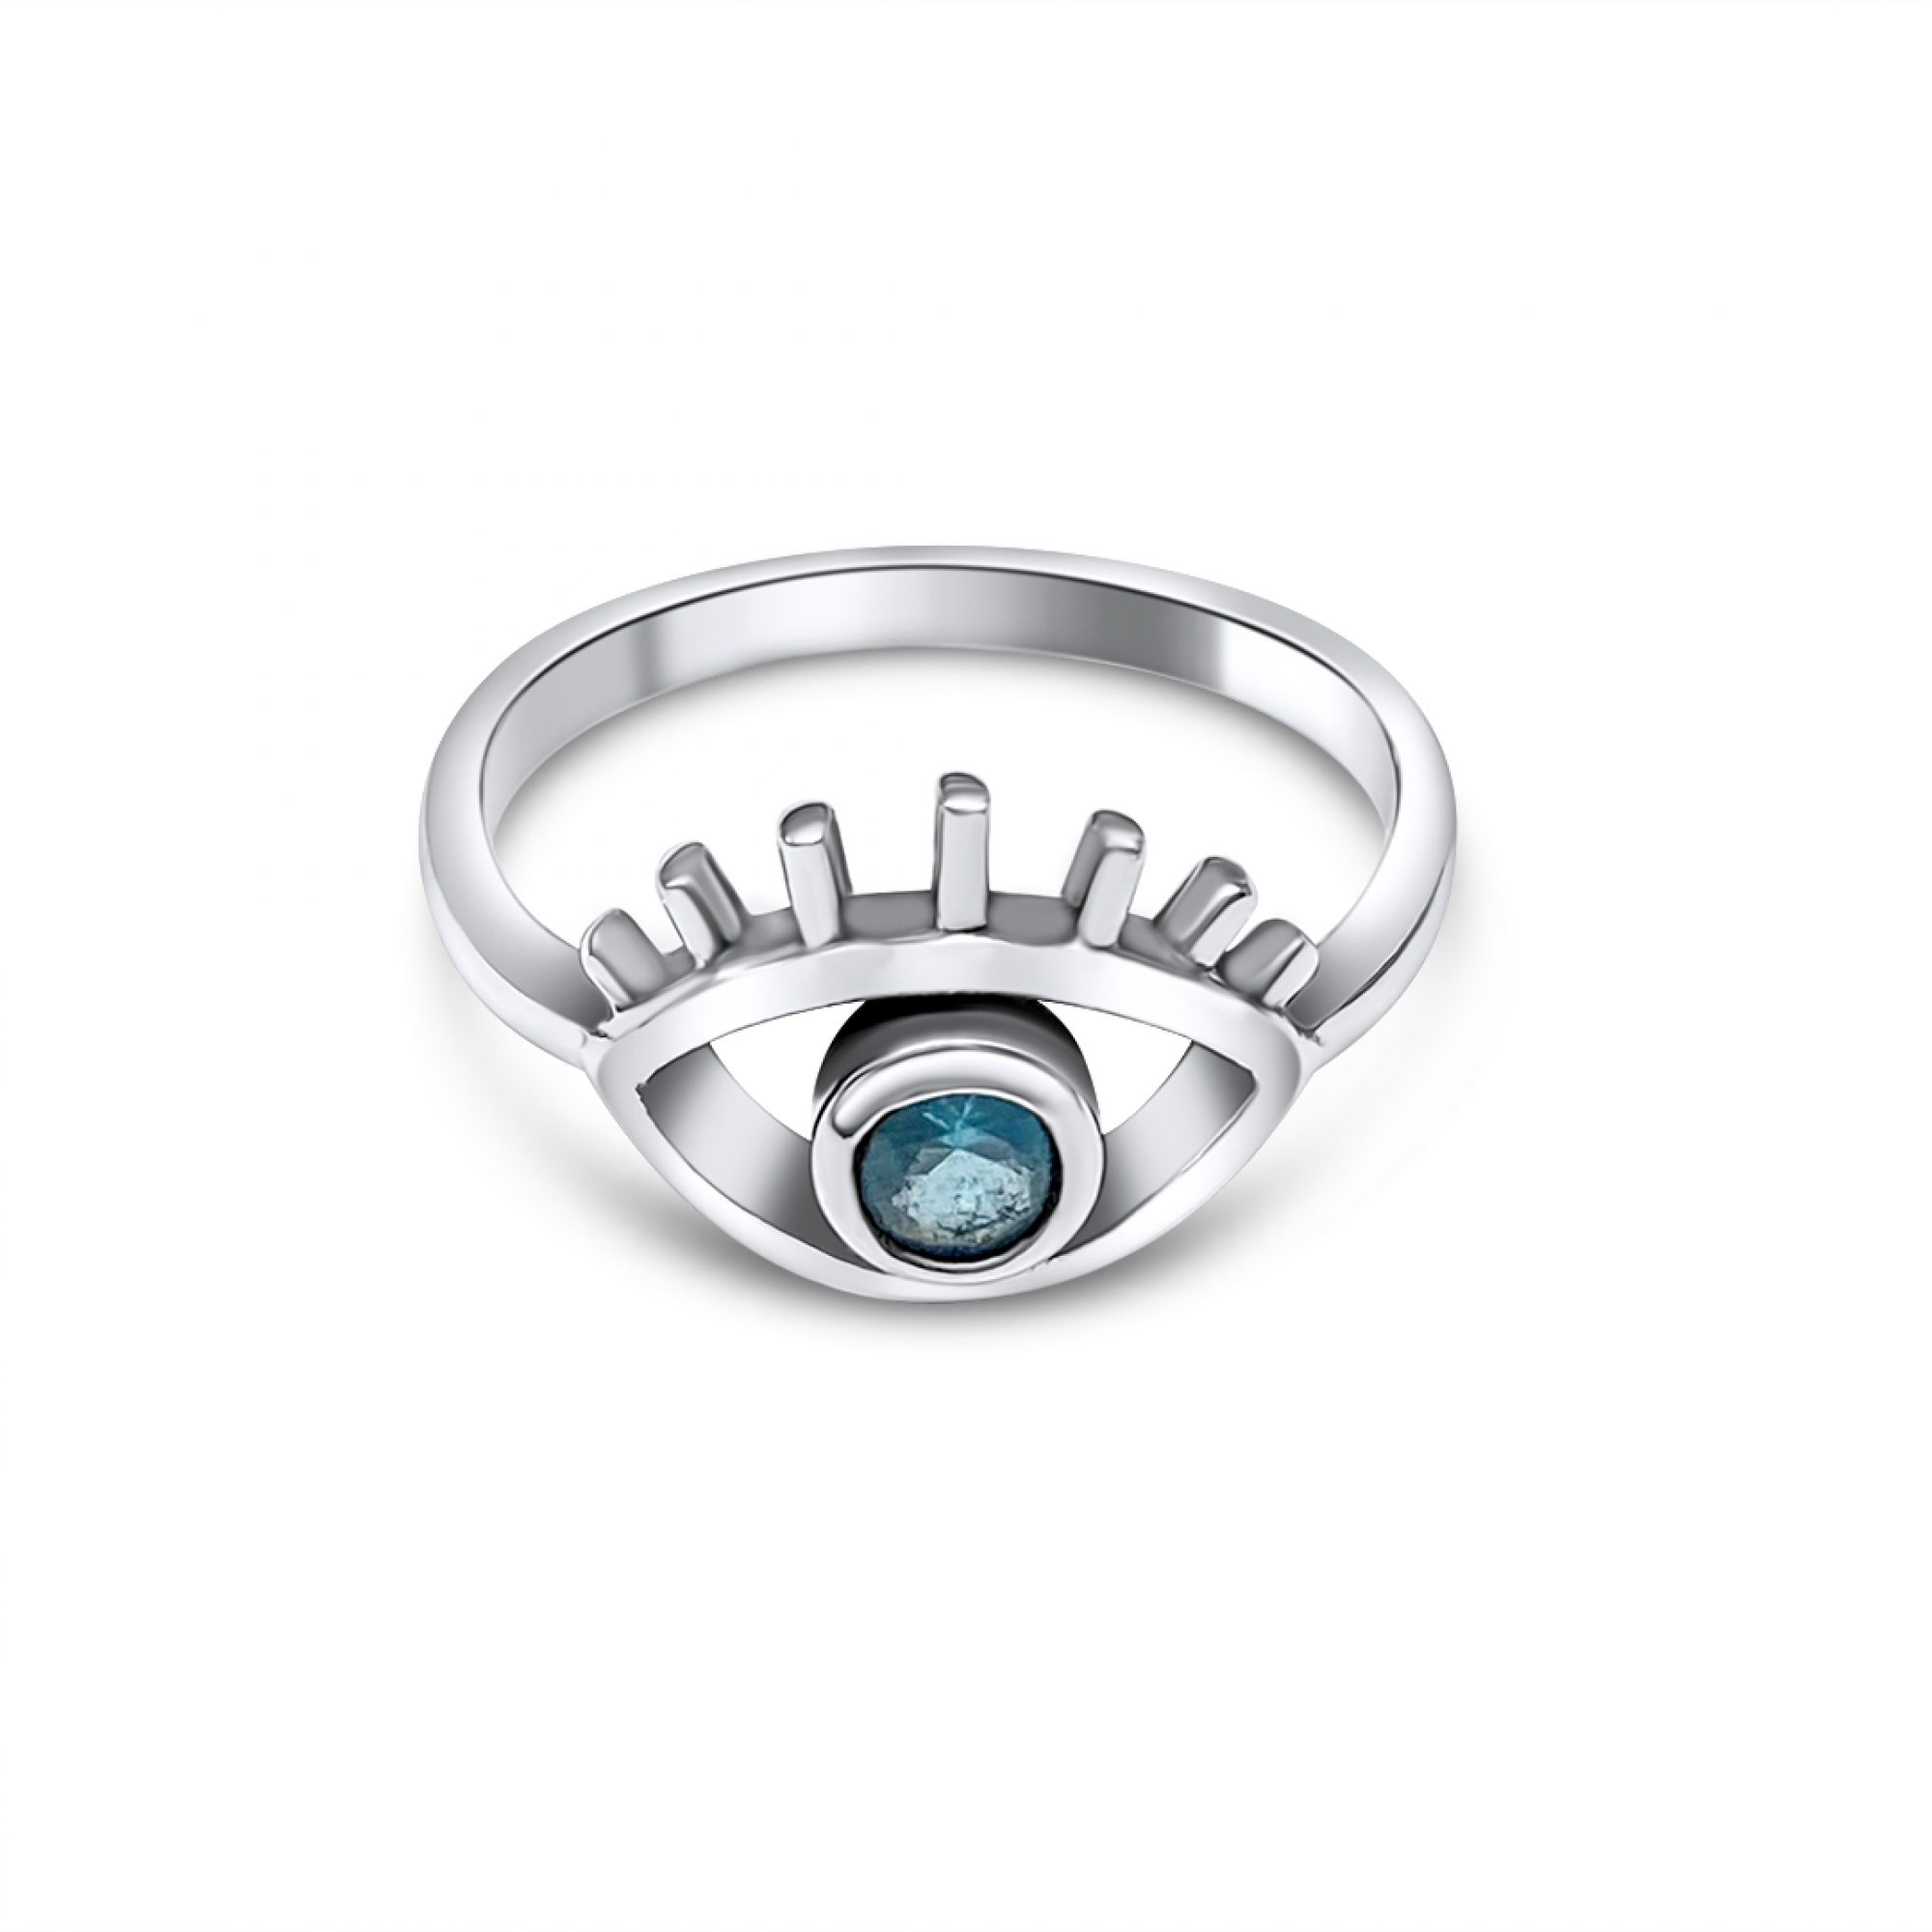 Eye ring with aquamarine stone